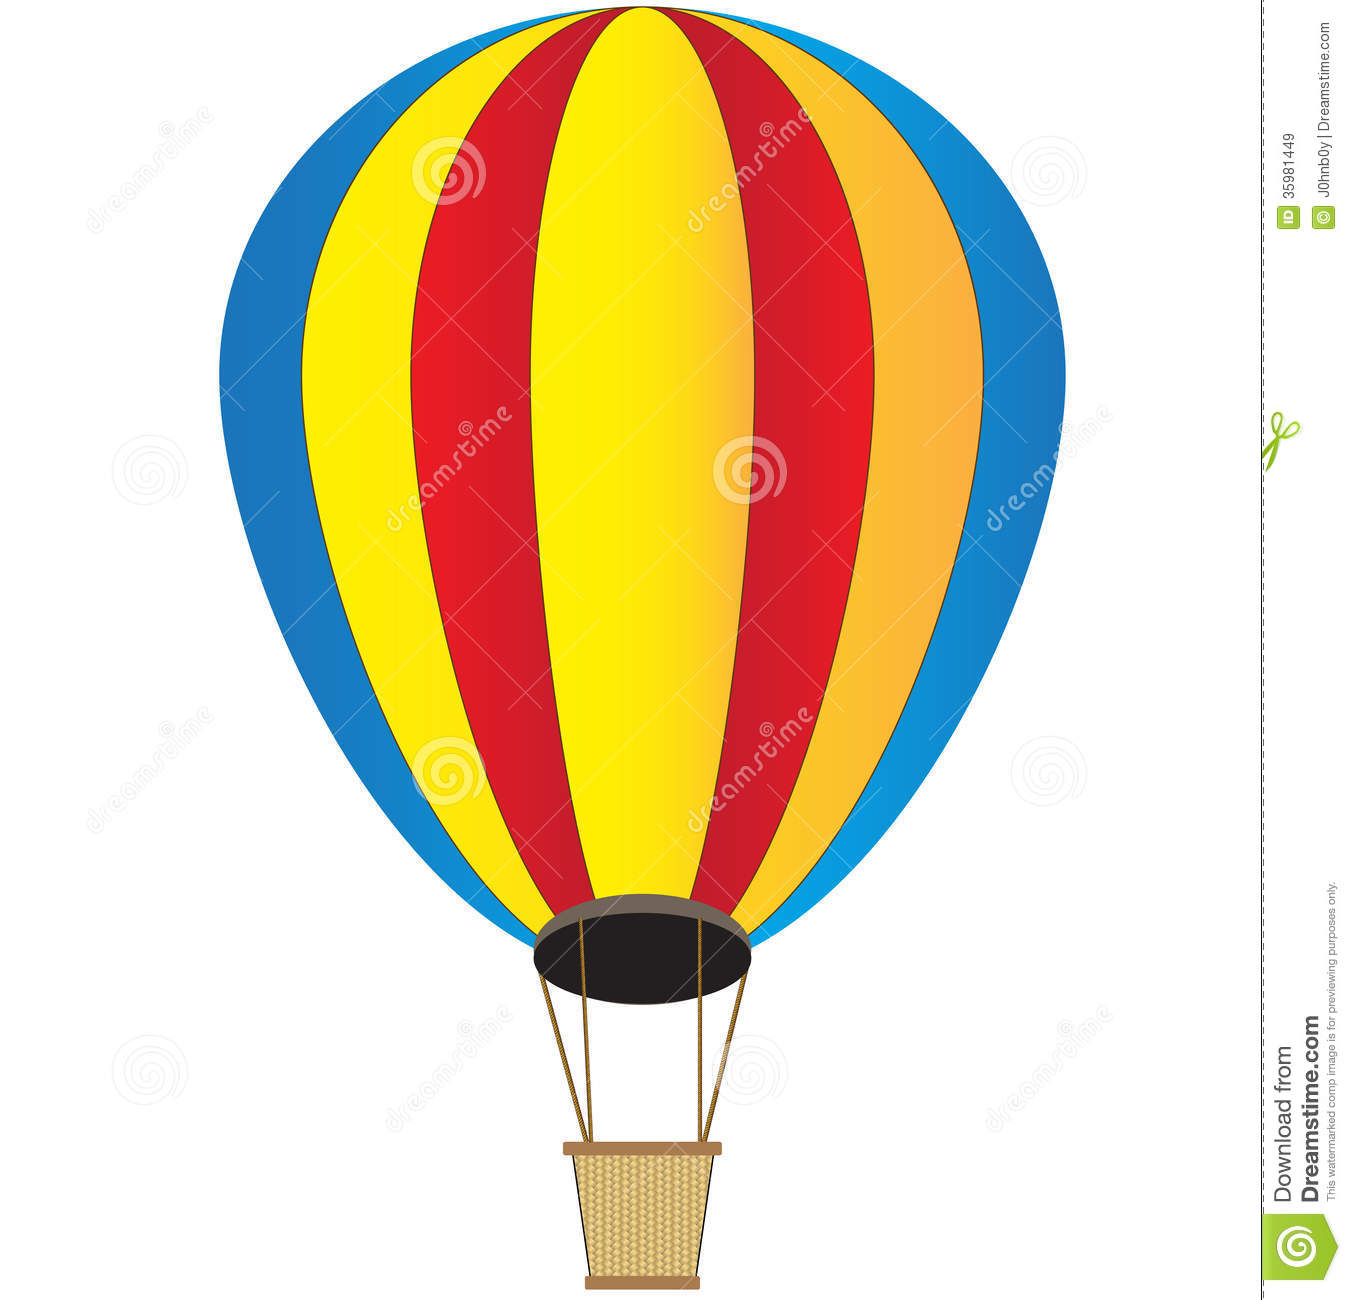 Hot air balloon basket clipart